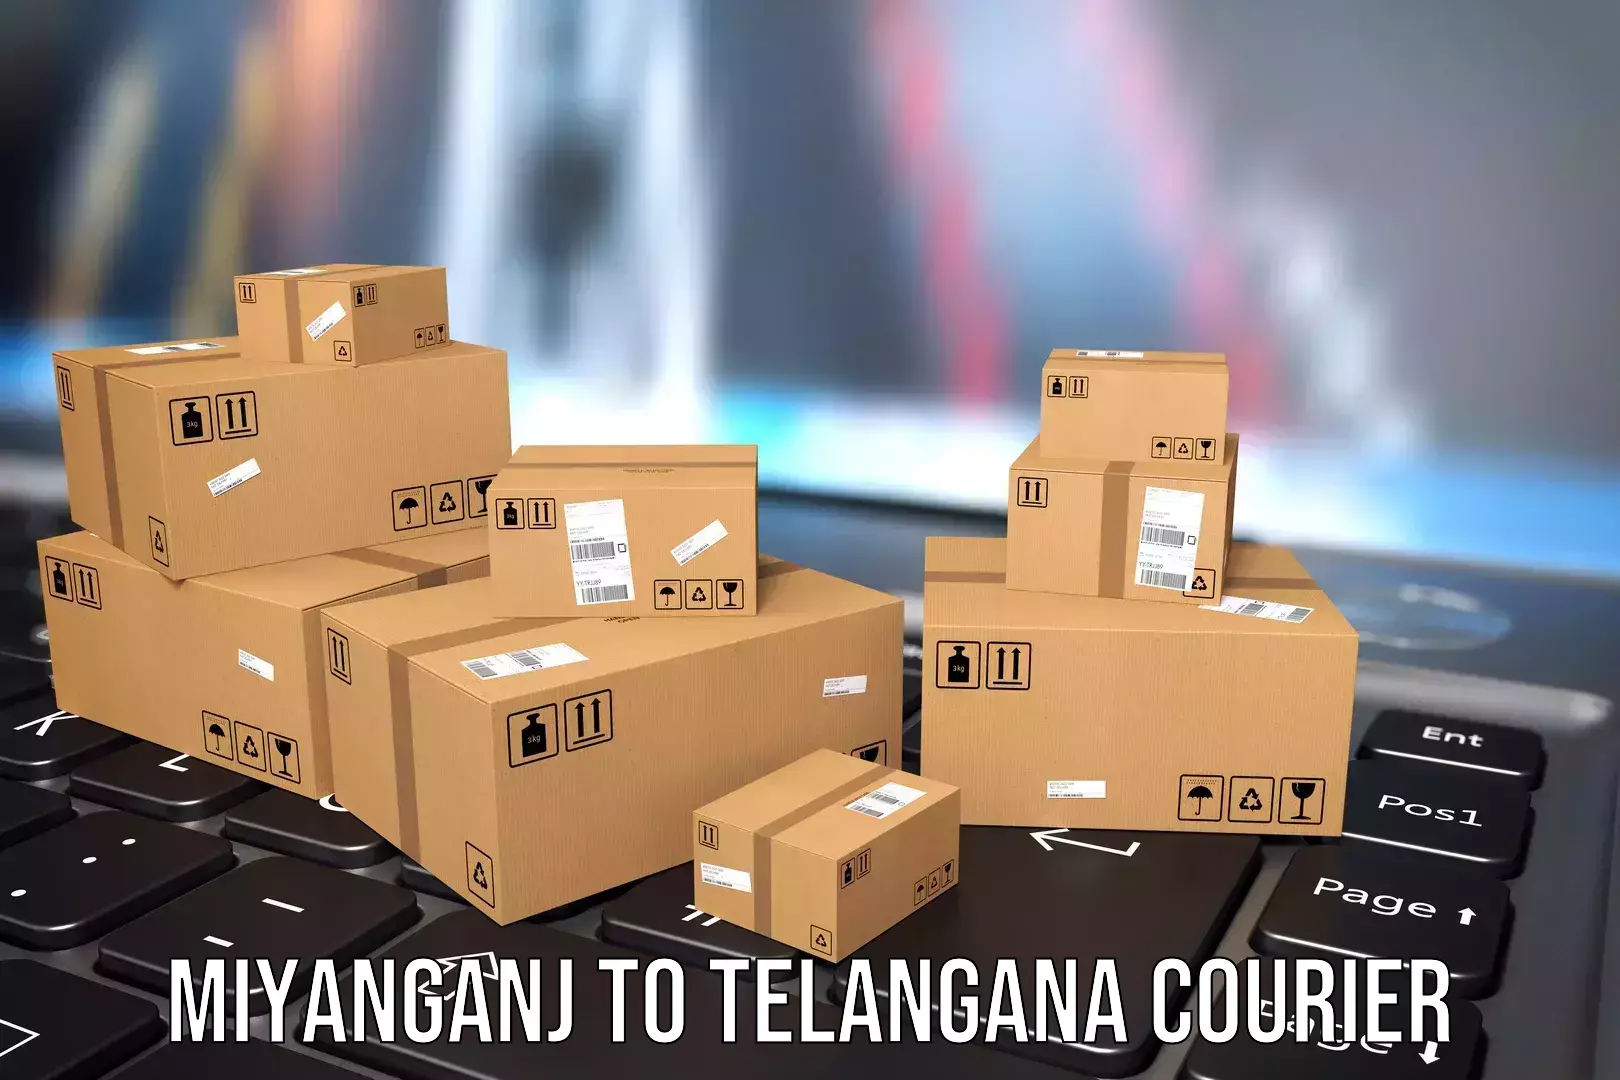 Single item baggage courier in Miyanganj to Tiryani